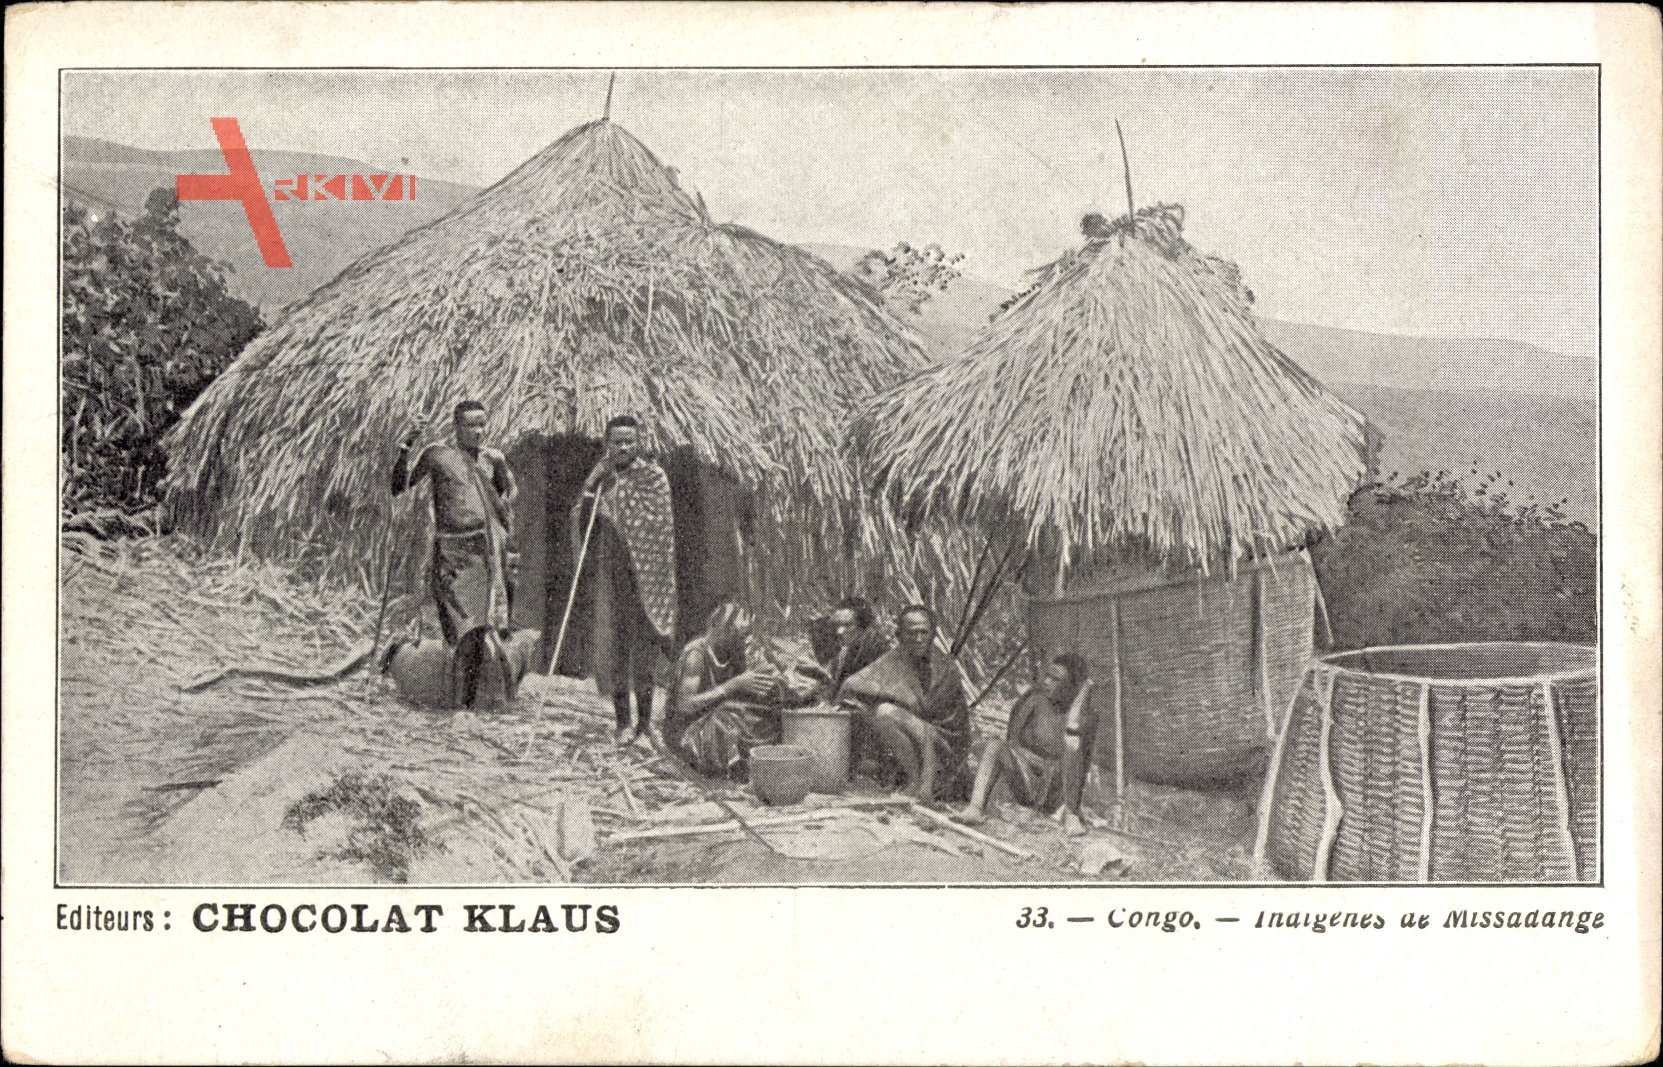 Französisch Kongo, Idigenes de Missadange, Strohhütten, Chocolat Klaus